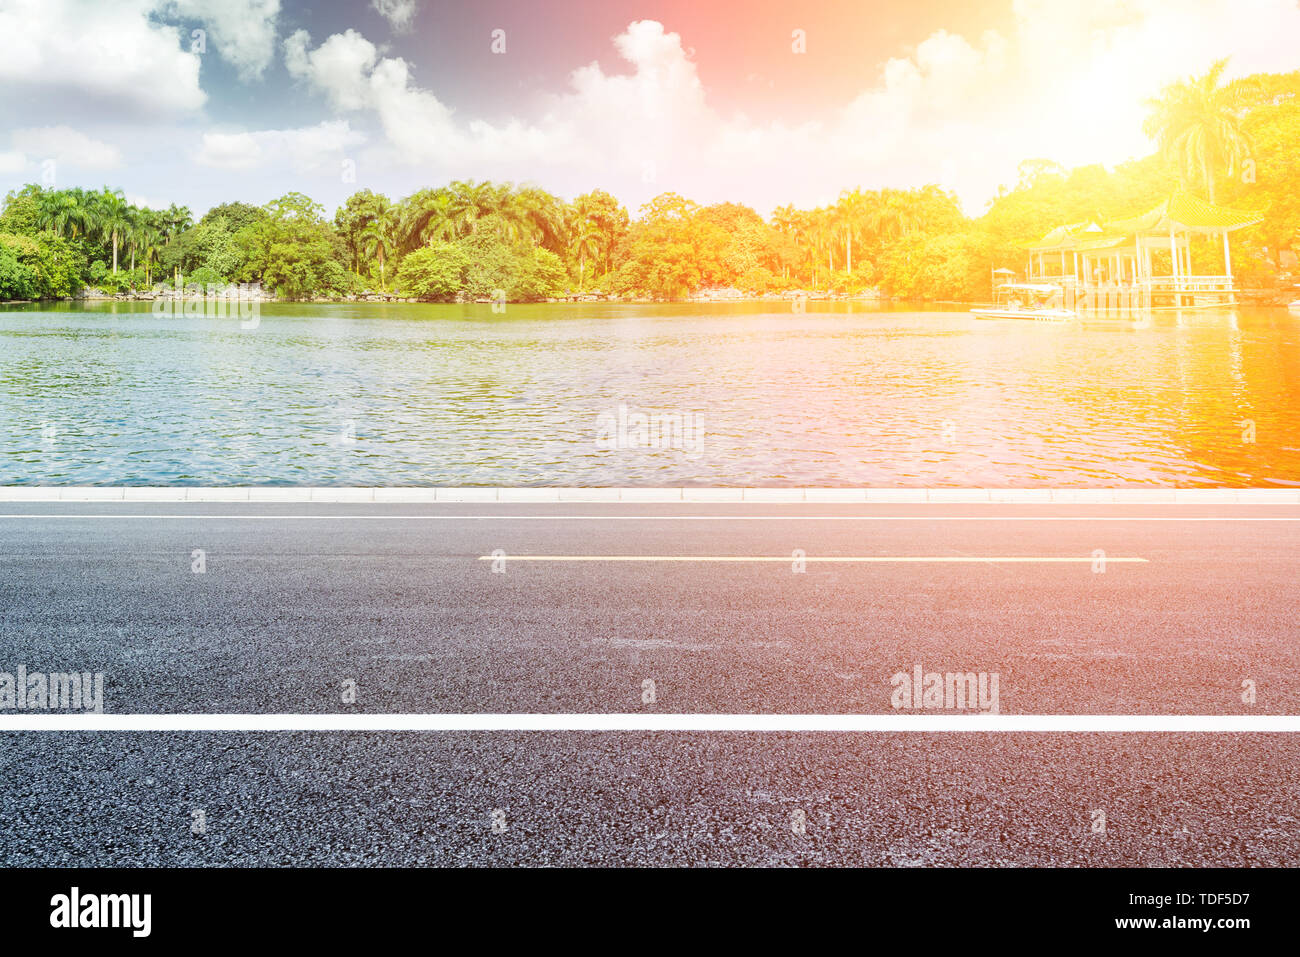 Ciel bleu et nuages blancs, Lake Shore paysage avec un revêtement en asphalte, la publicité automobile historique des matériaux routiers Banque D'Images